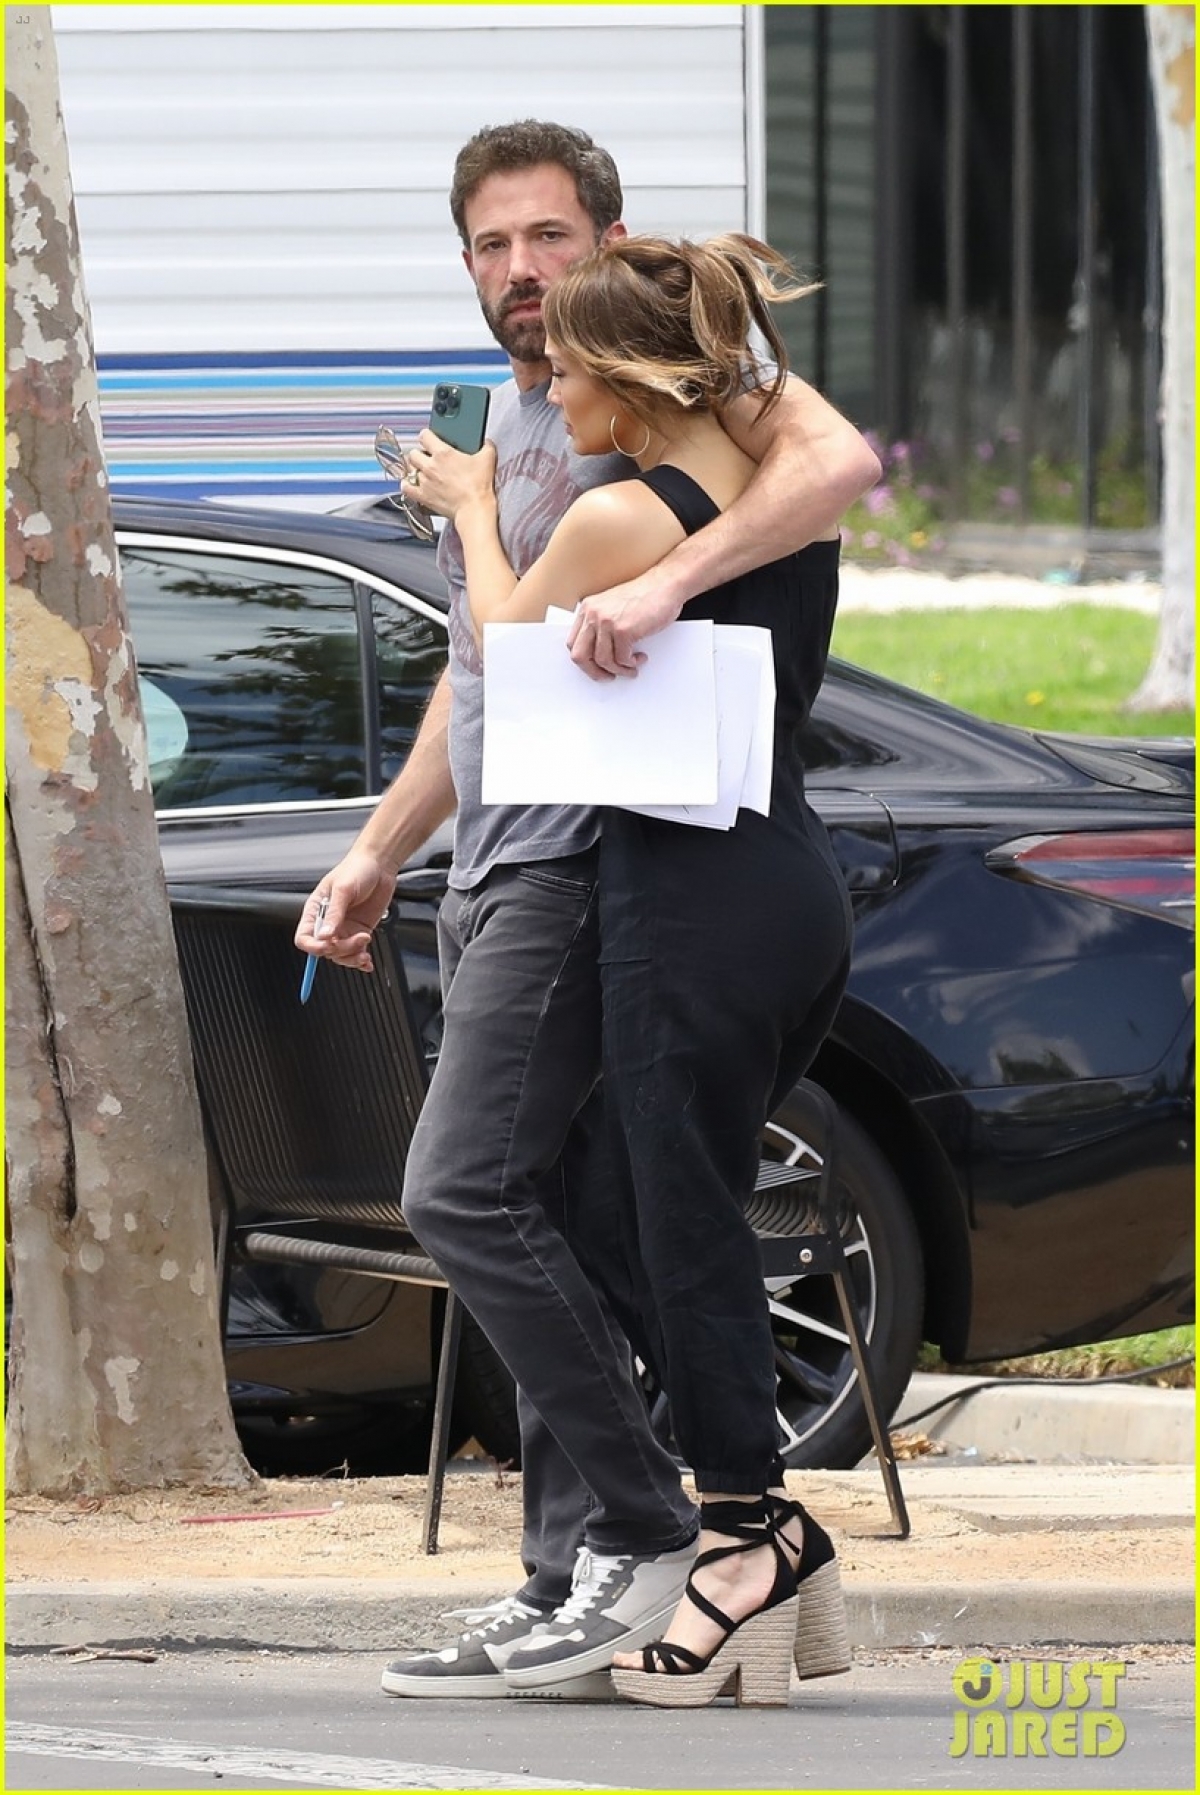 Jennifer Lopez và bạn trai khóa môi ngọt ngào trên phim trường - Ảnh 5.